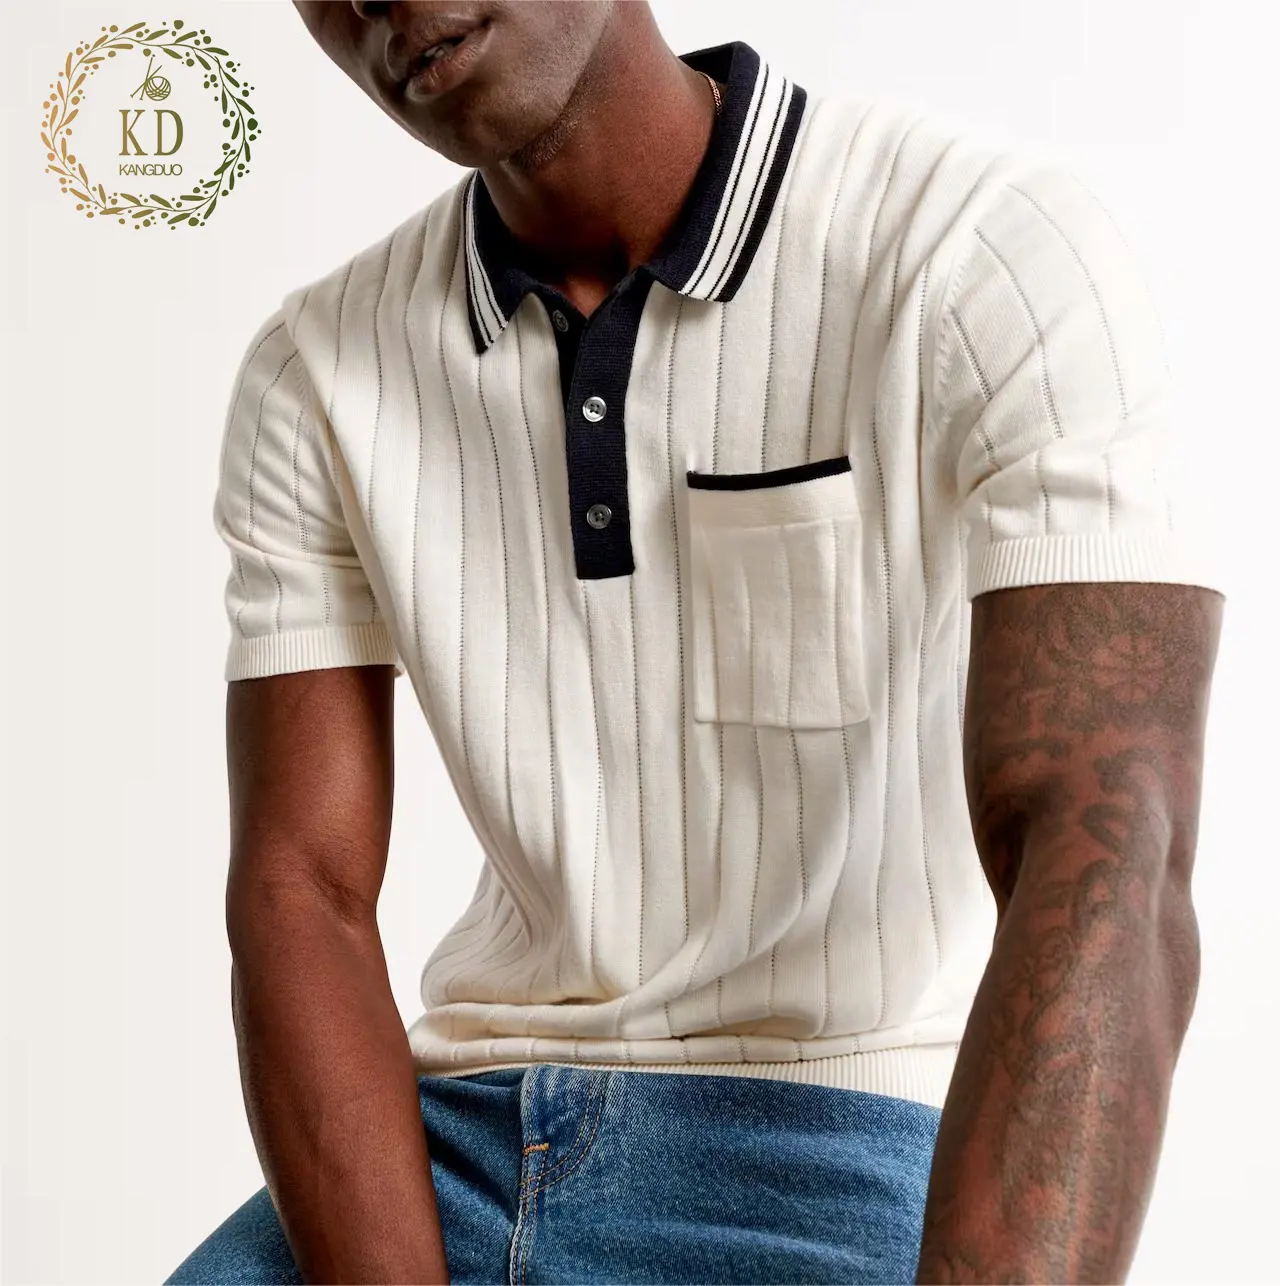 KD Knitwear Hersteller Soft Yarn Fabric Leichte Kurzarm Business Wear Strick hemd Sidline Style Polo Men Sweater